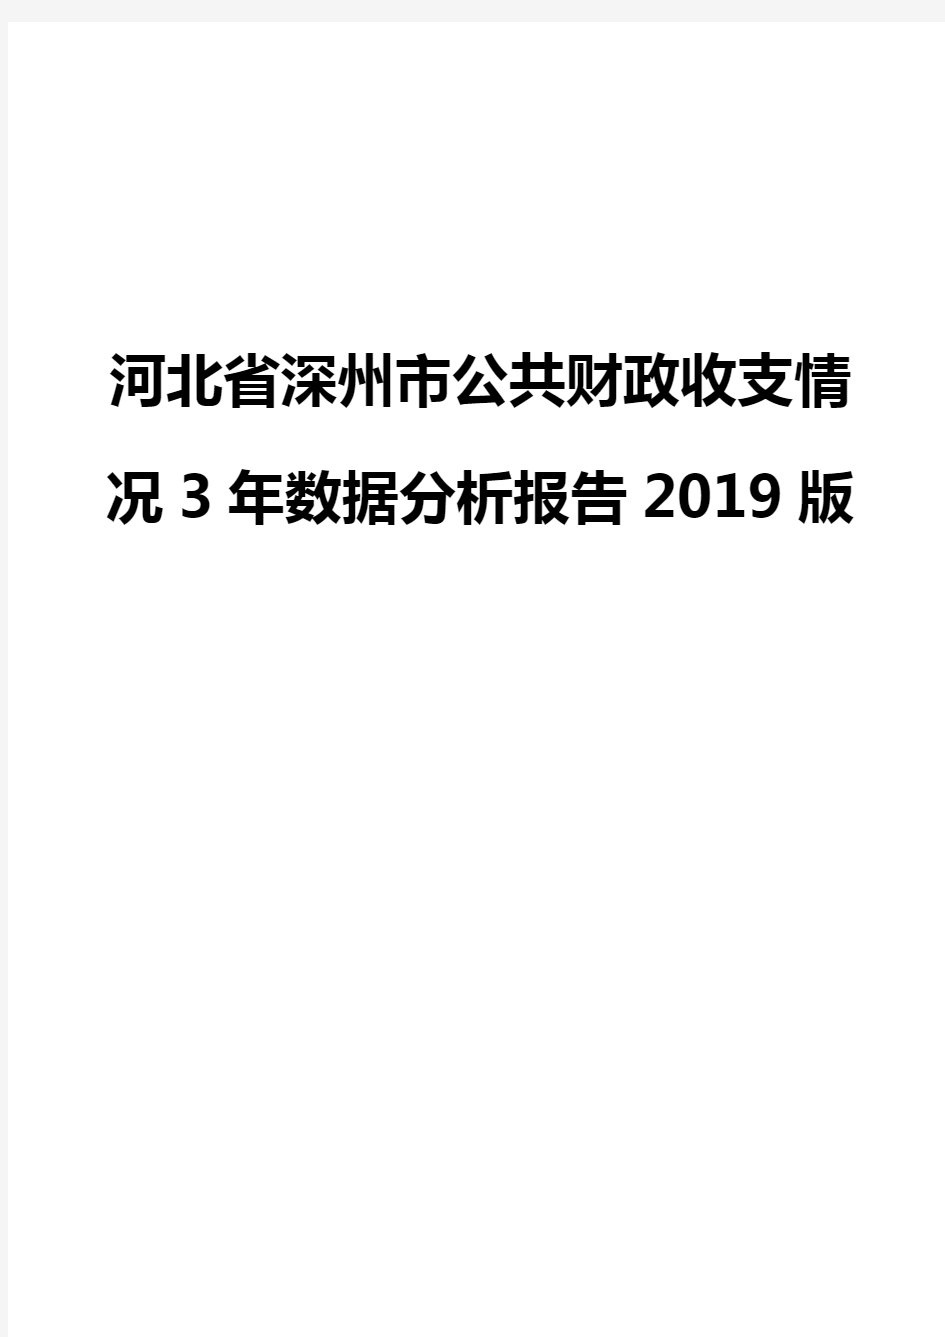 河北省深州市公共财政收支情况3年数据分析报告2019版